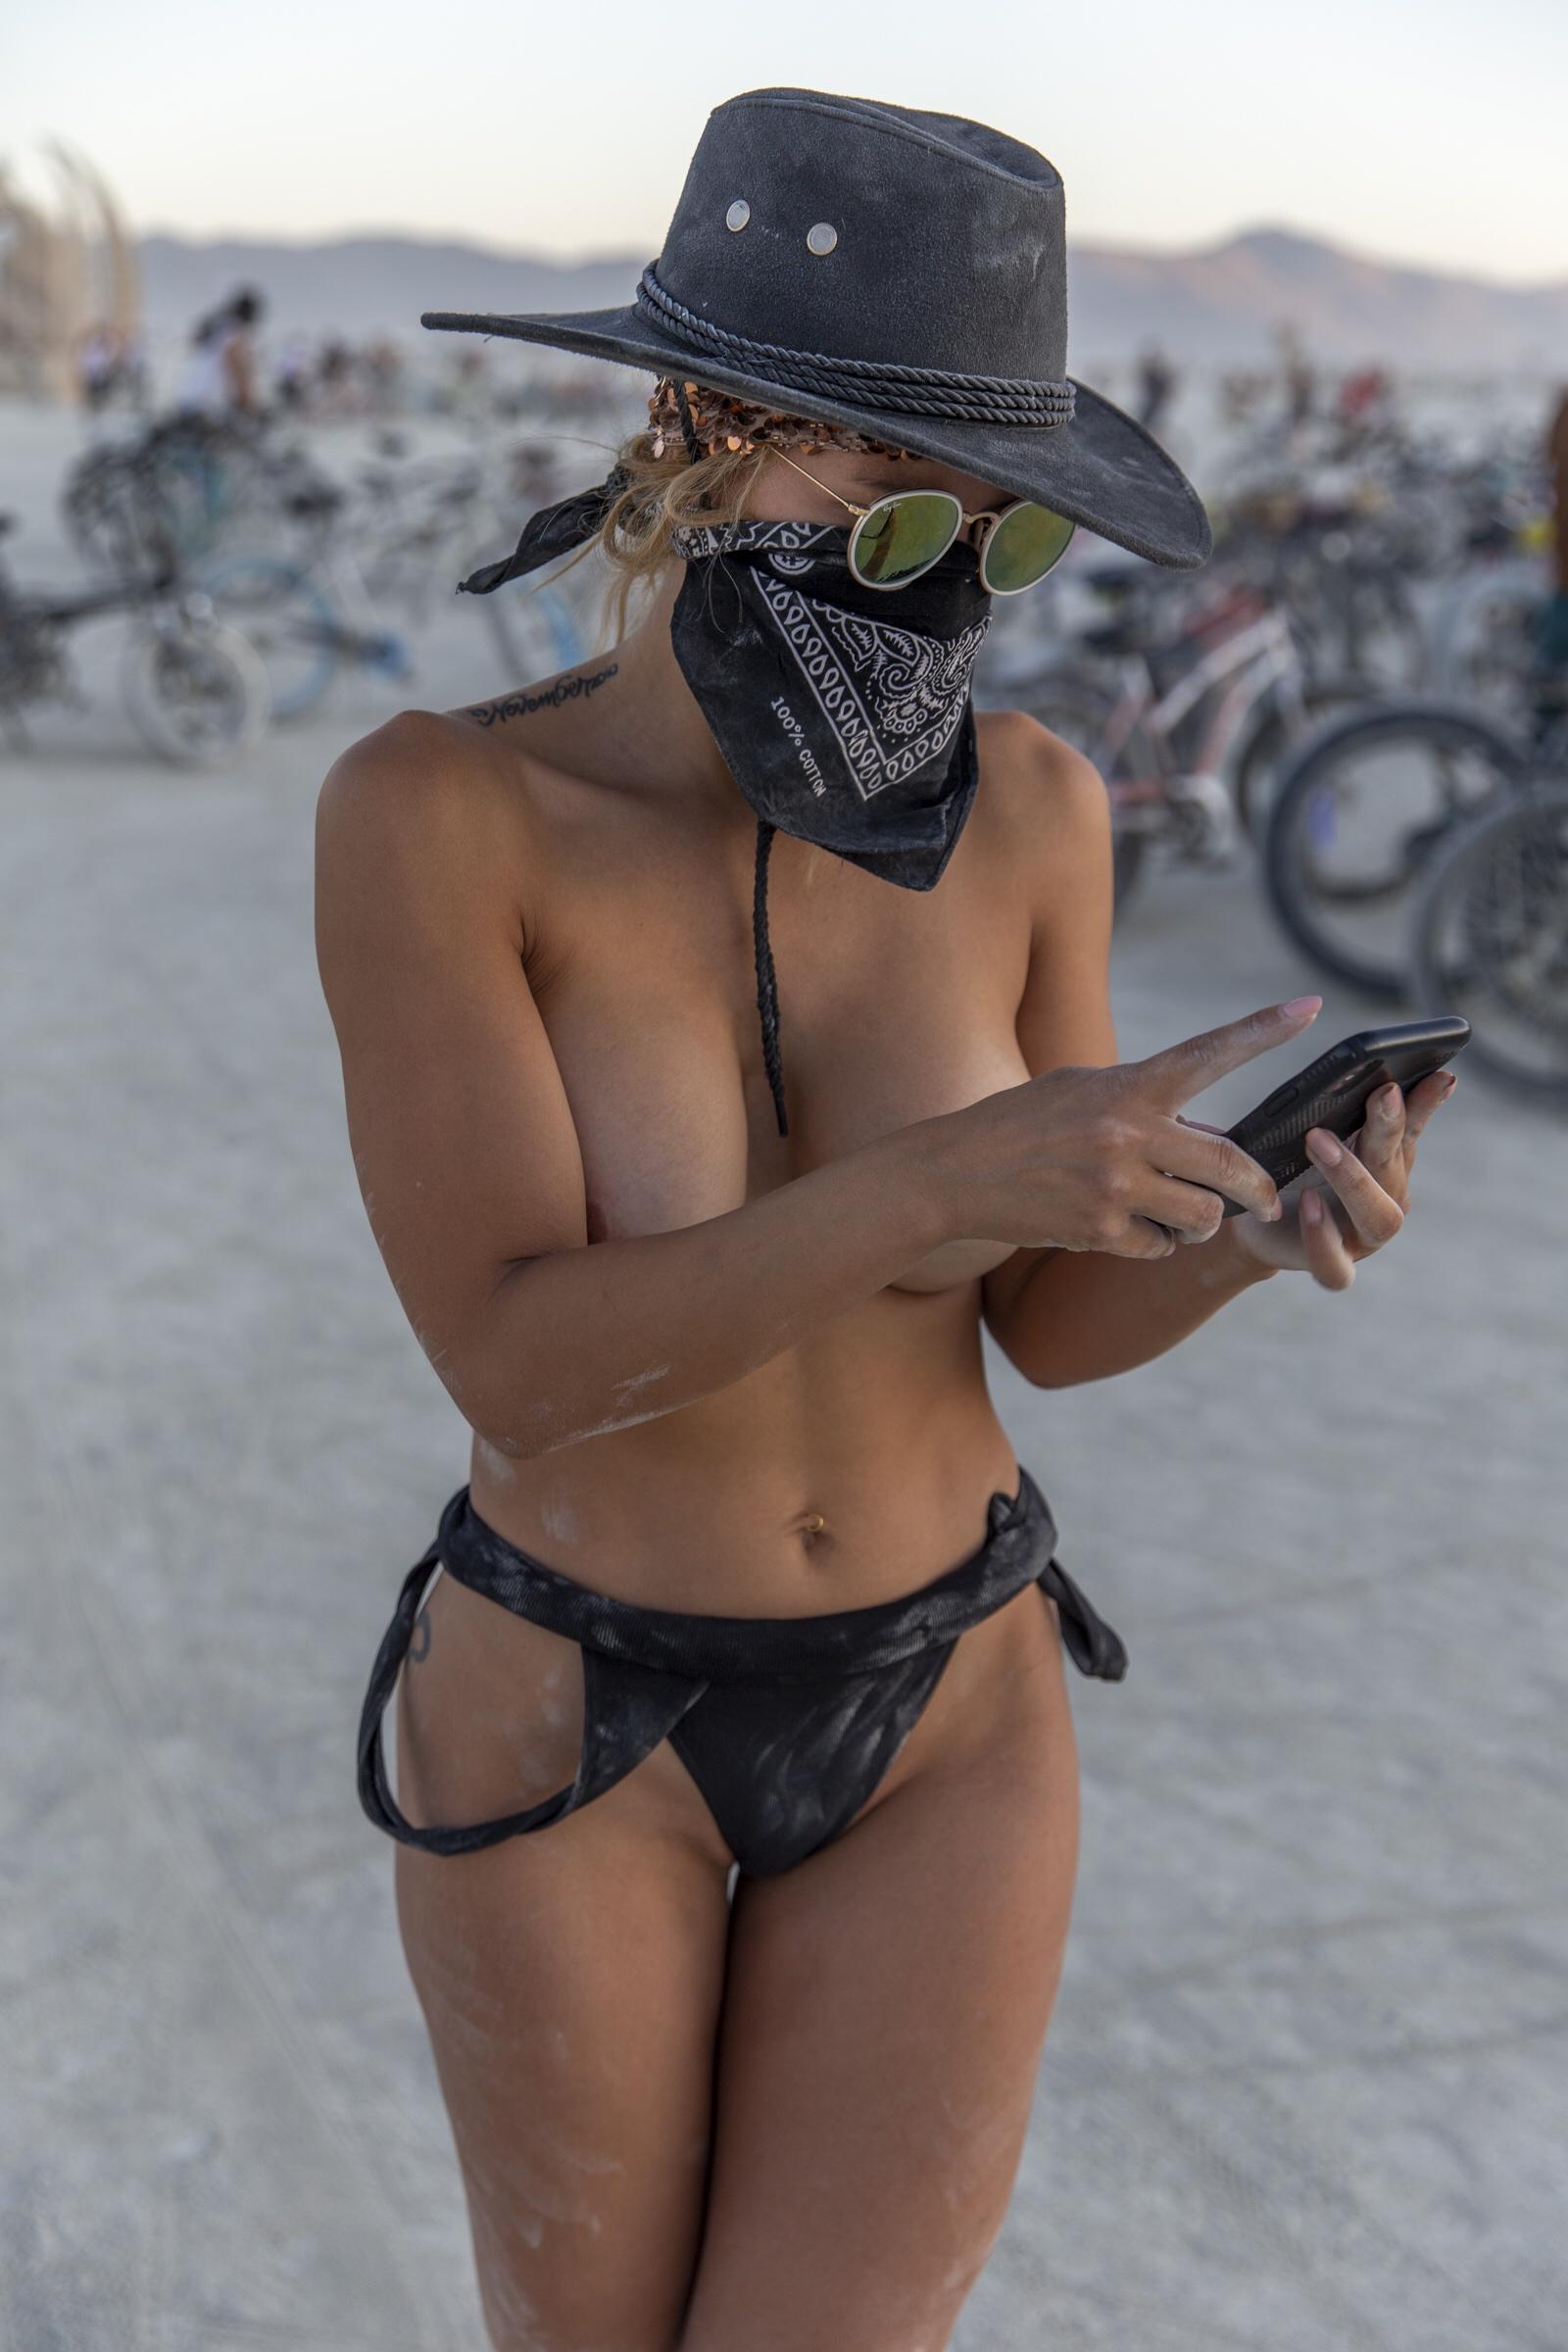 1600x2400, 211 Kb / Burning Man, пустыня, фестиваль, пыль, телефон, телефон...